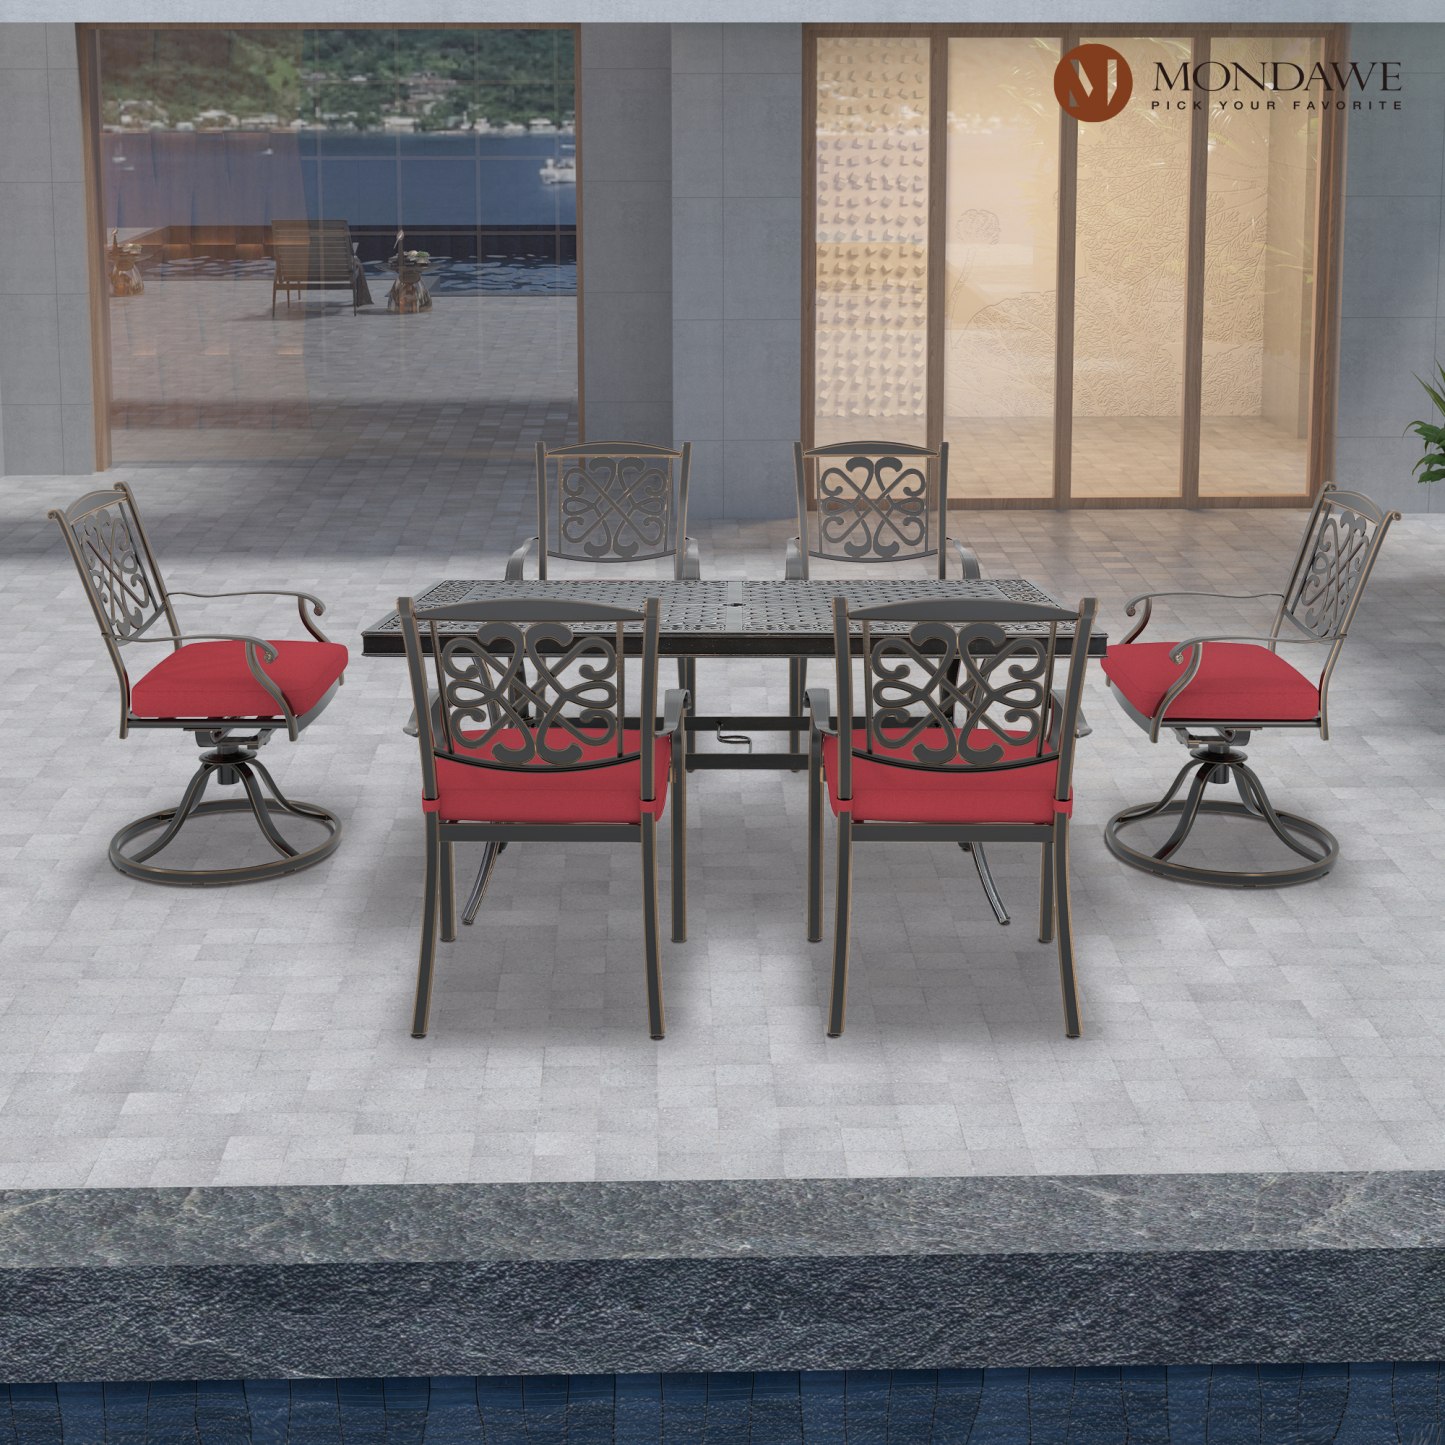 Mondawe 7Pcs Cast Aluminum Dining Set with Rectangle Table, Flower-Shaped Backrest Swivel Chairs and Flower-Shaped Backrest Dining Chairs In Red/Beige-Mondawe